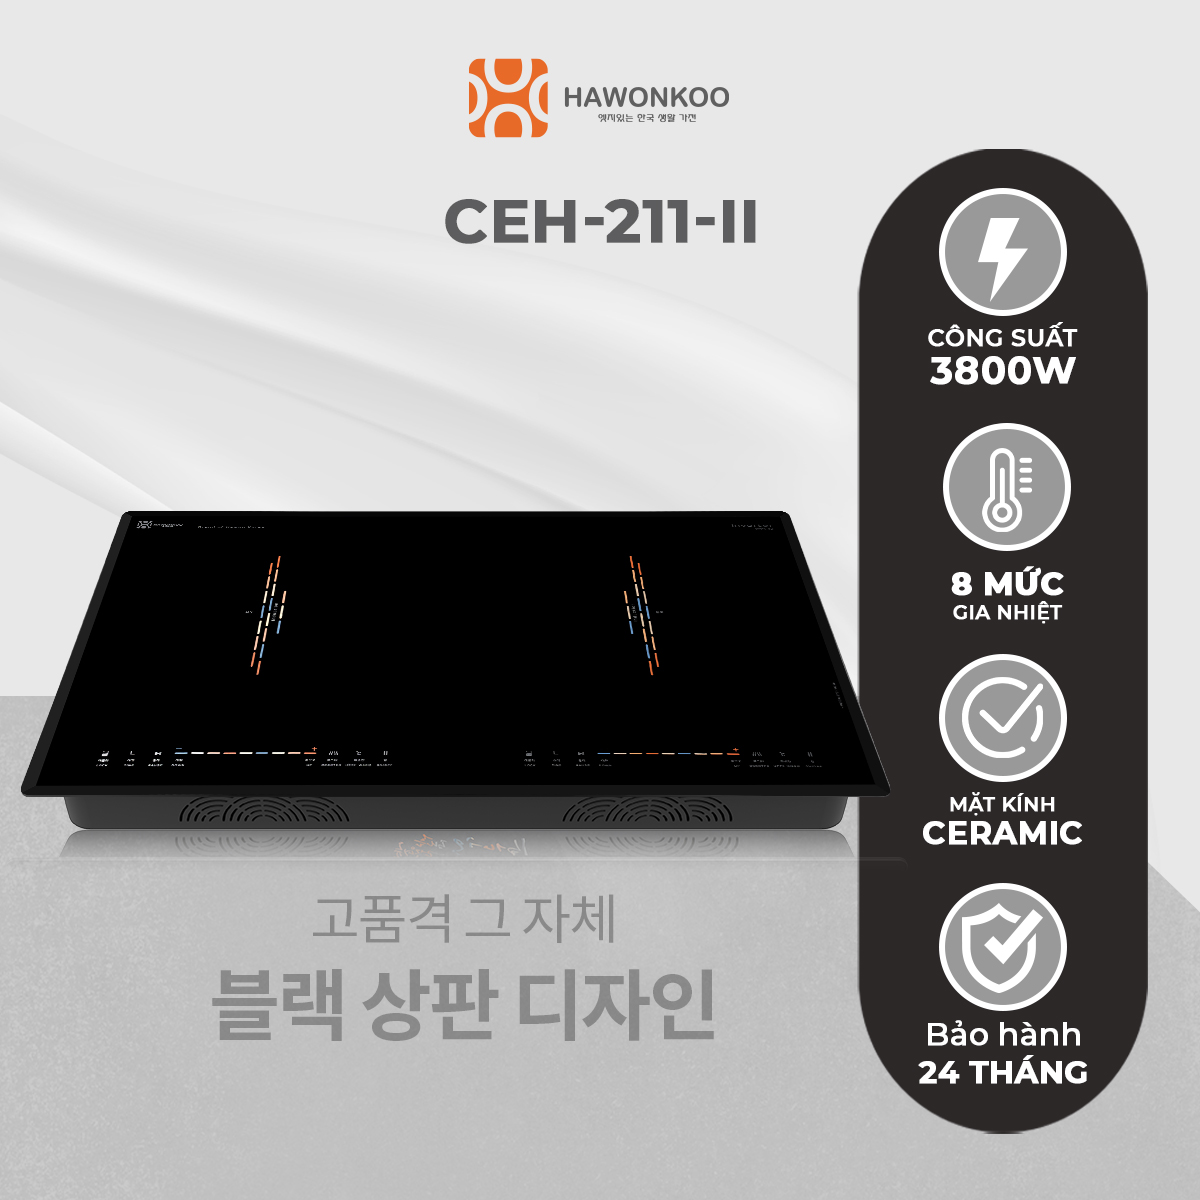 Bếp Điện Từ Đôi HAWONKOO CEH-211-II Inverter 4000W Hàng Chính Hãng Bảo Hành 2 Năm - Thương Hiệu Hàn Quốc